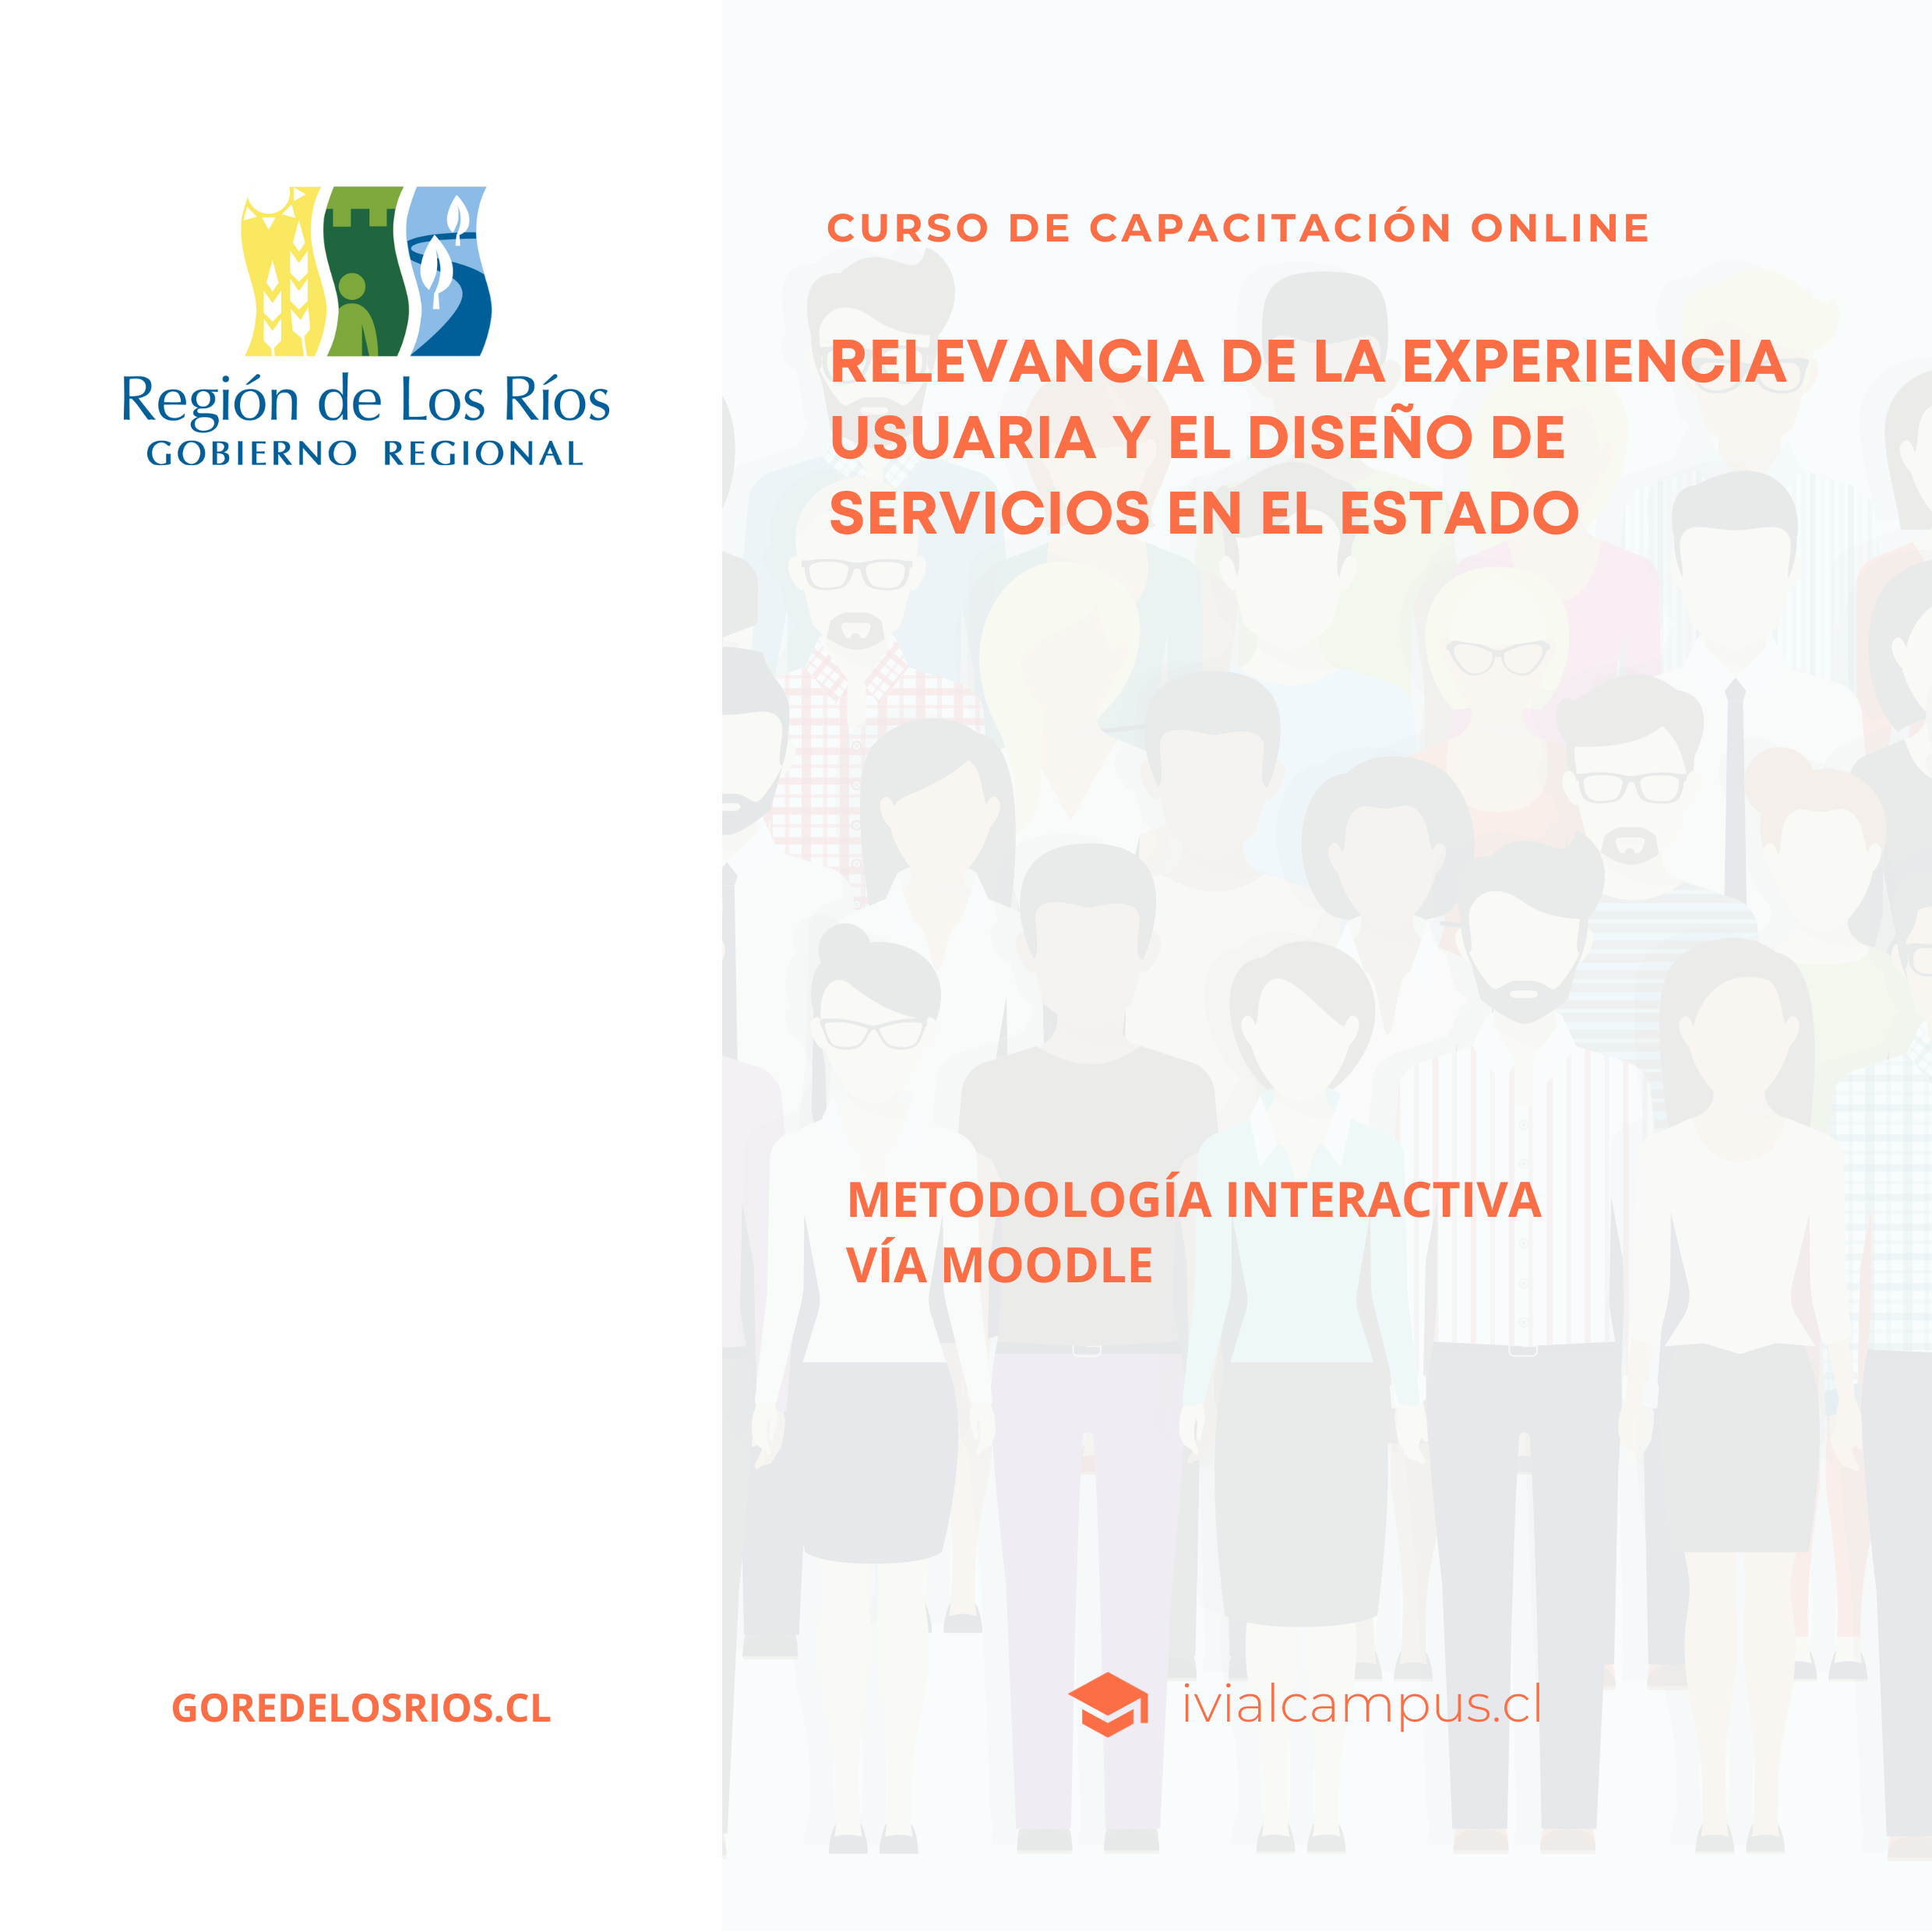 GOBIERNO REGIONAL DE LOS RÍOS: Relevancia de la experiencia usuaria y el diseño de servicios en el estado